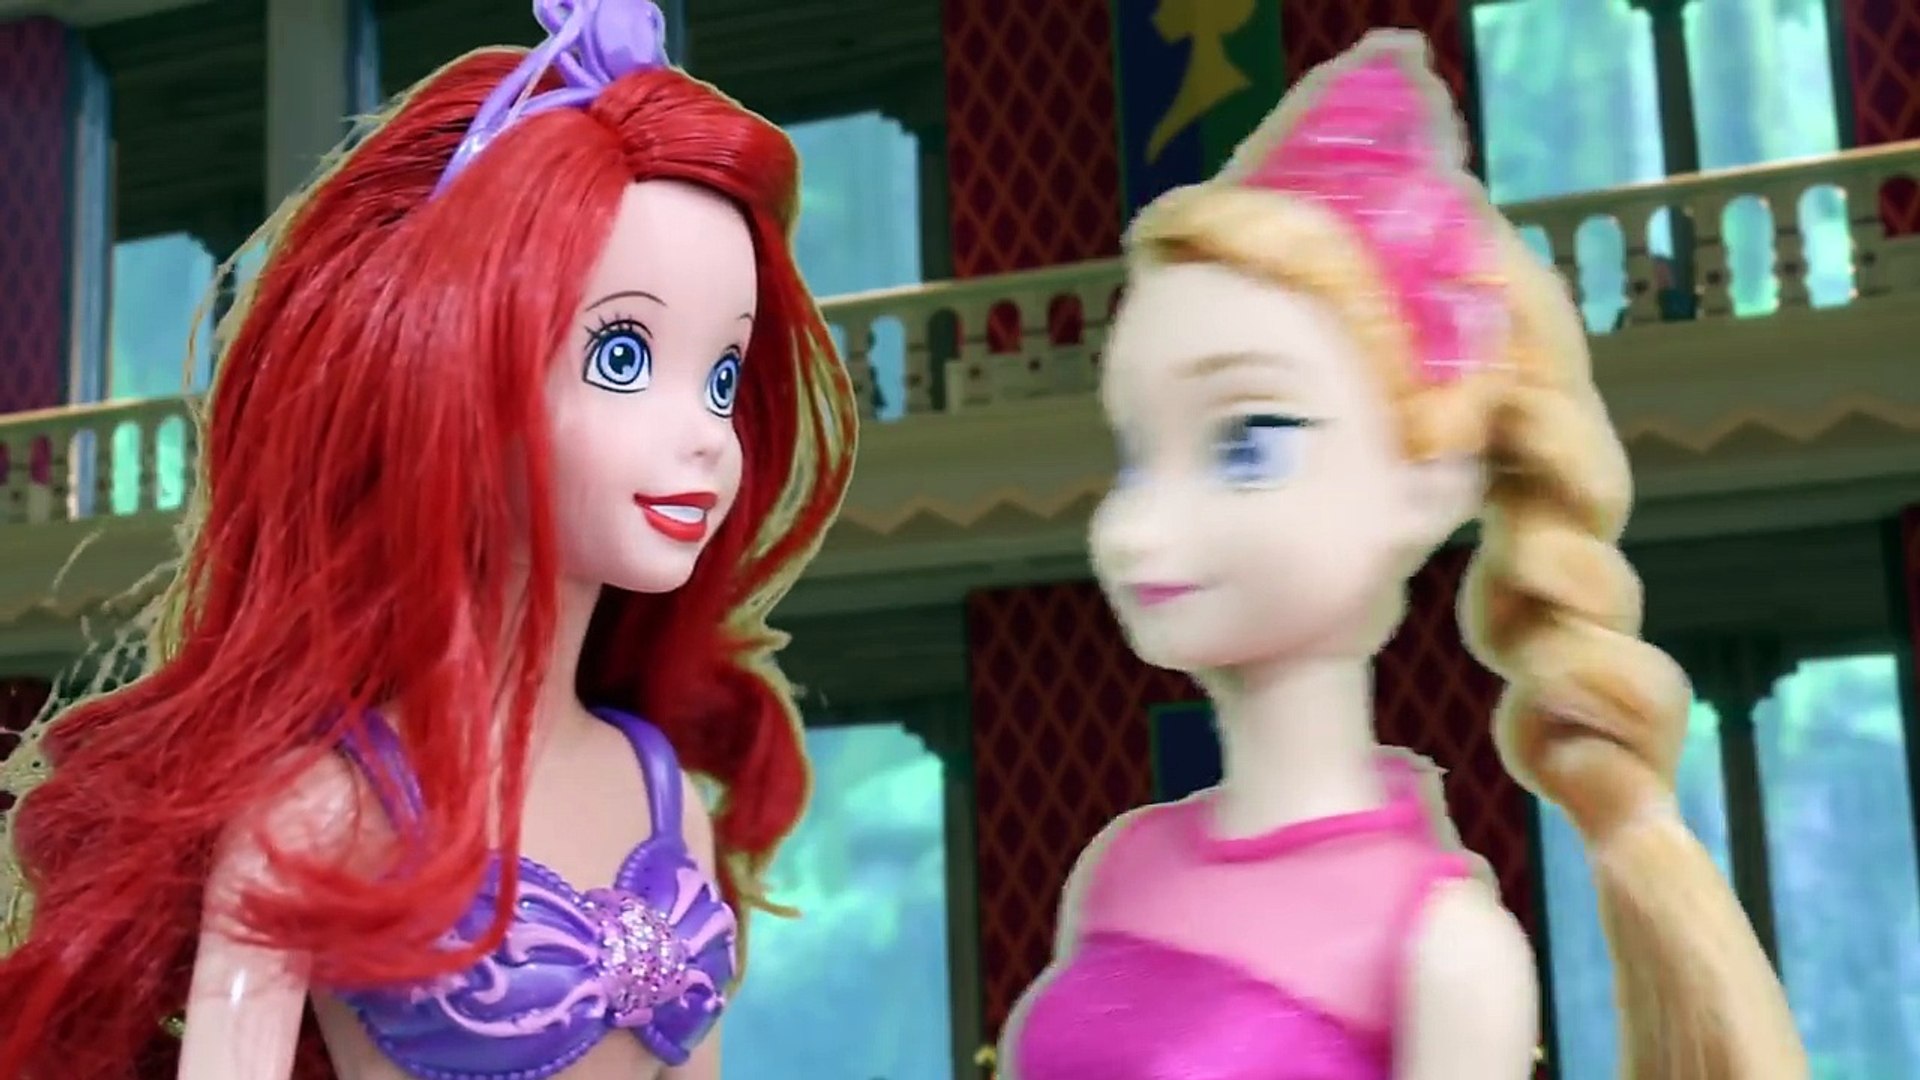 NOVELINHA:Nascimento d filha da Barbie - Dailymotion Video